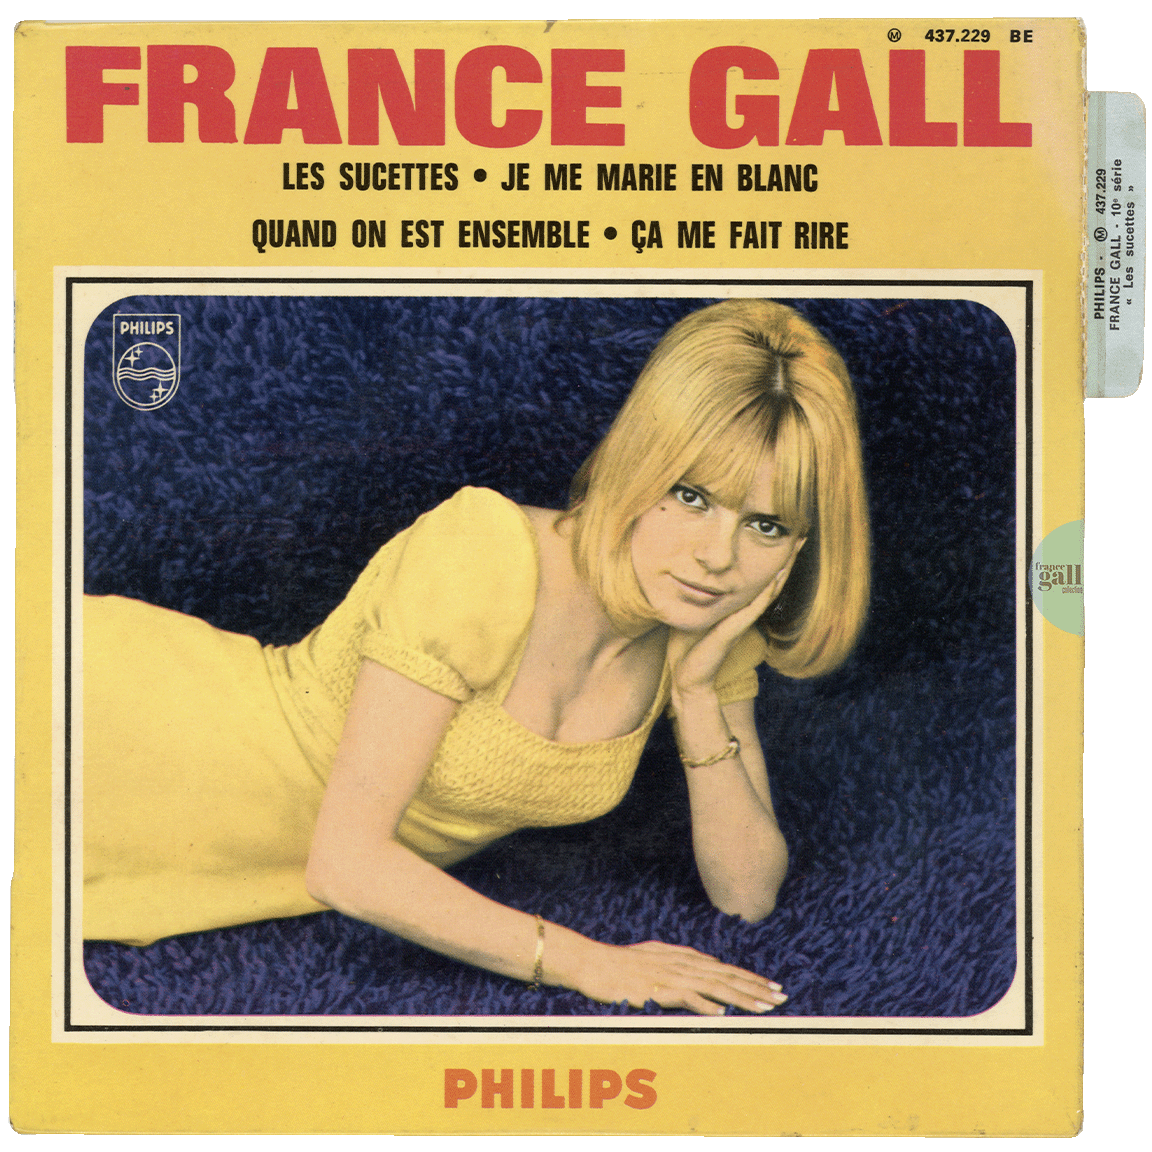 Super 45 tours avec sa languette édité en juin 1966, 10ème EP contenant les titres Les sucettes, Je me marie en blanc, Quand on est ensemble et Ça me fait rire.